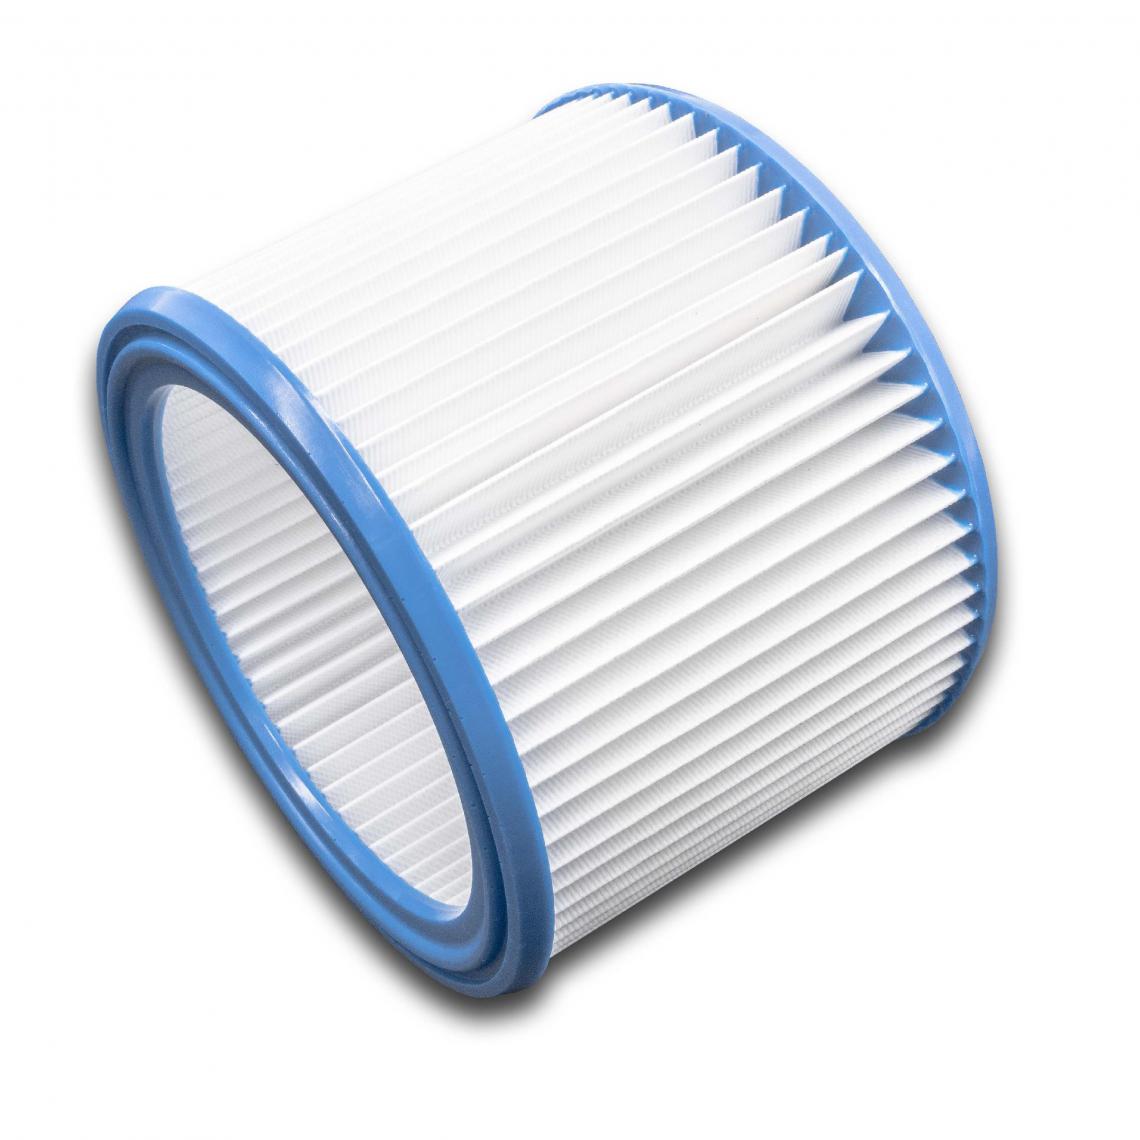 Vhbw - vhbw Set de filtres 10x Filtre plissé compatible avec Nilfisk Attix 30-21 PC, 30-2M PC, 350-01, 360-11 aspirateur à sec ou humide - Filtre à cartouche - Accessoire entretien des sols